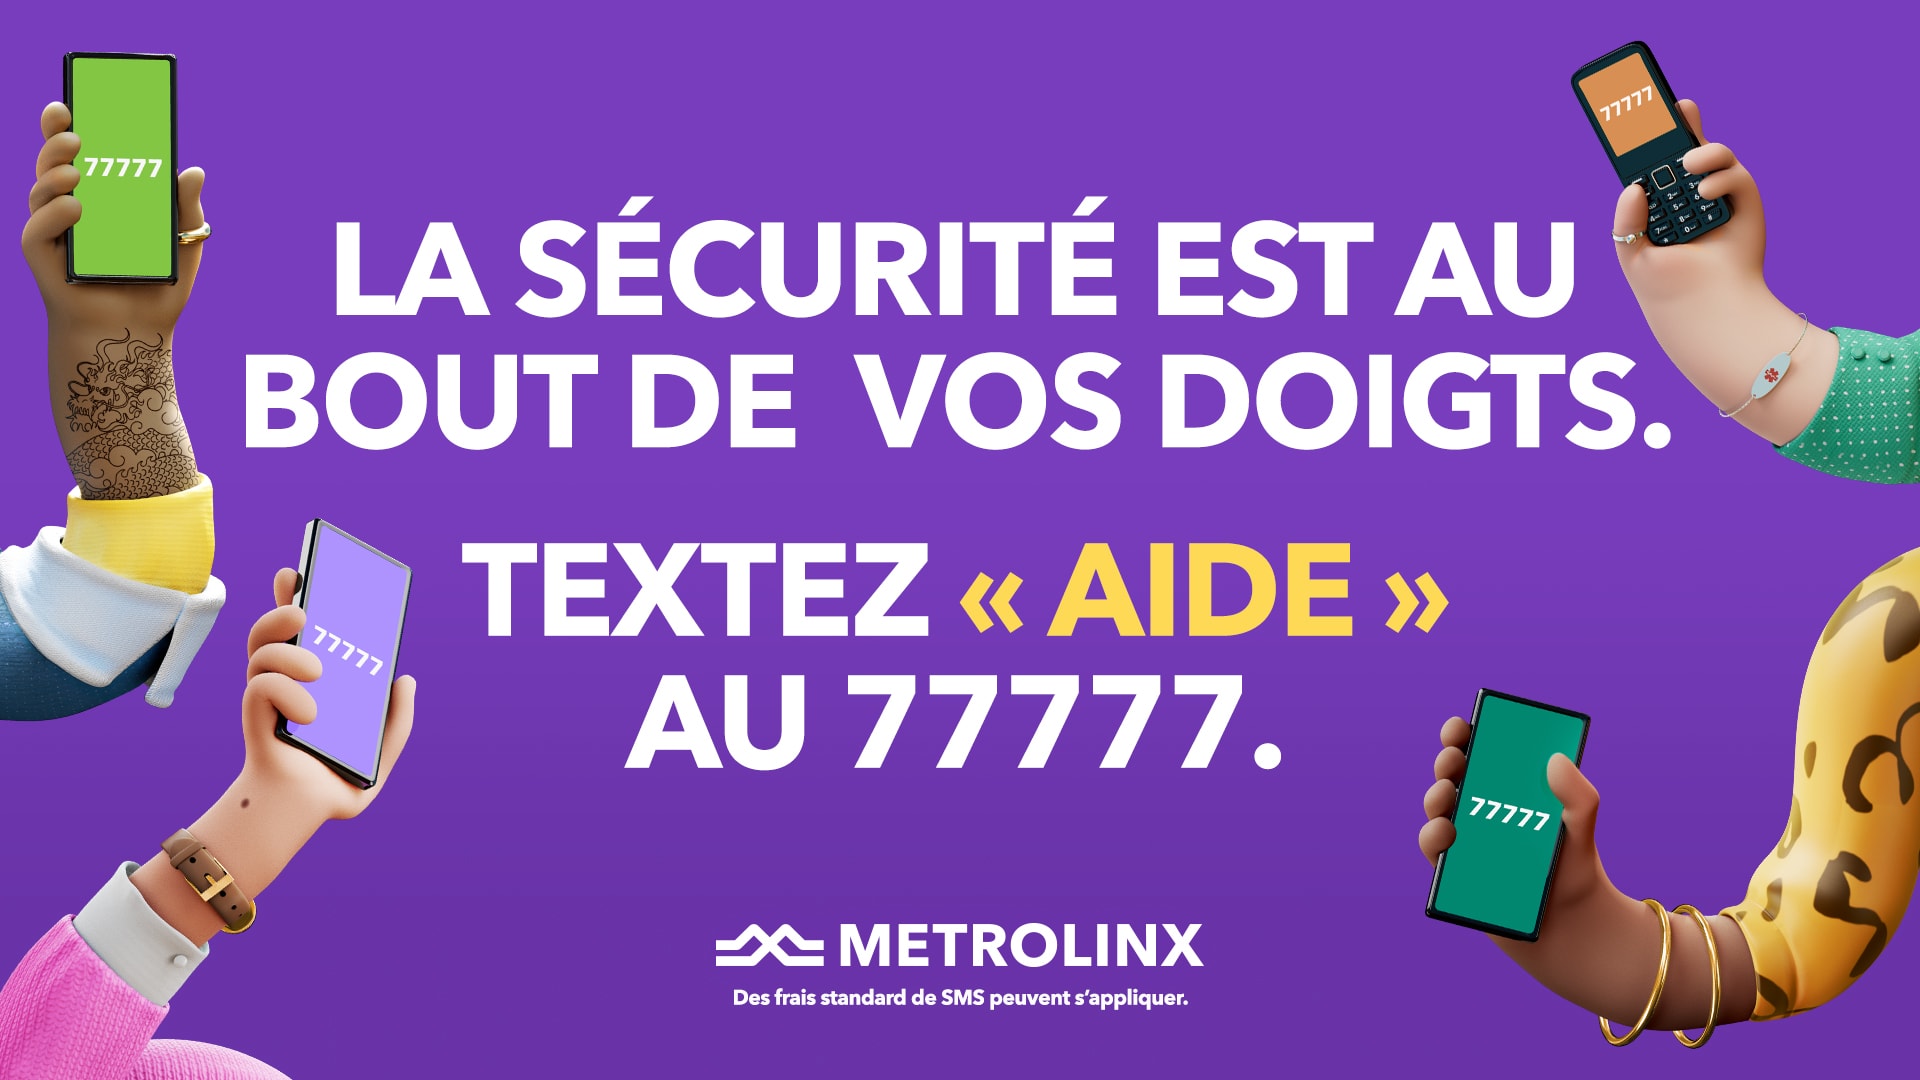 Les clients peuvent envoyer le mot « AIDE » par SMS au 77777